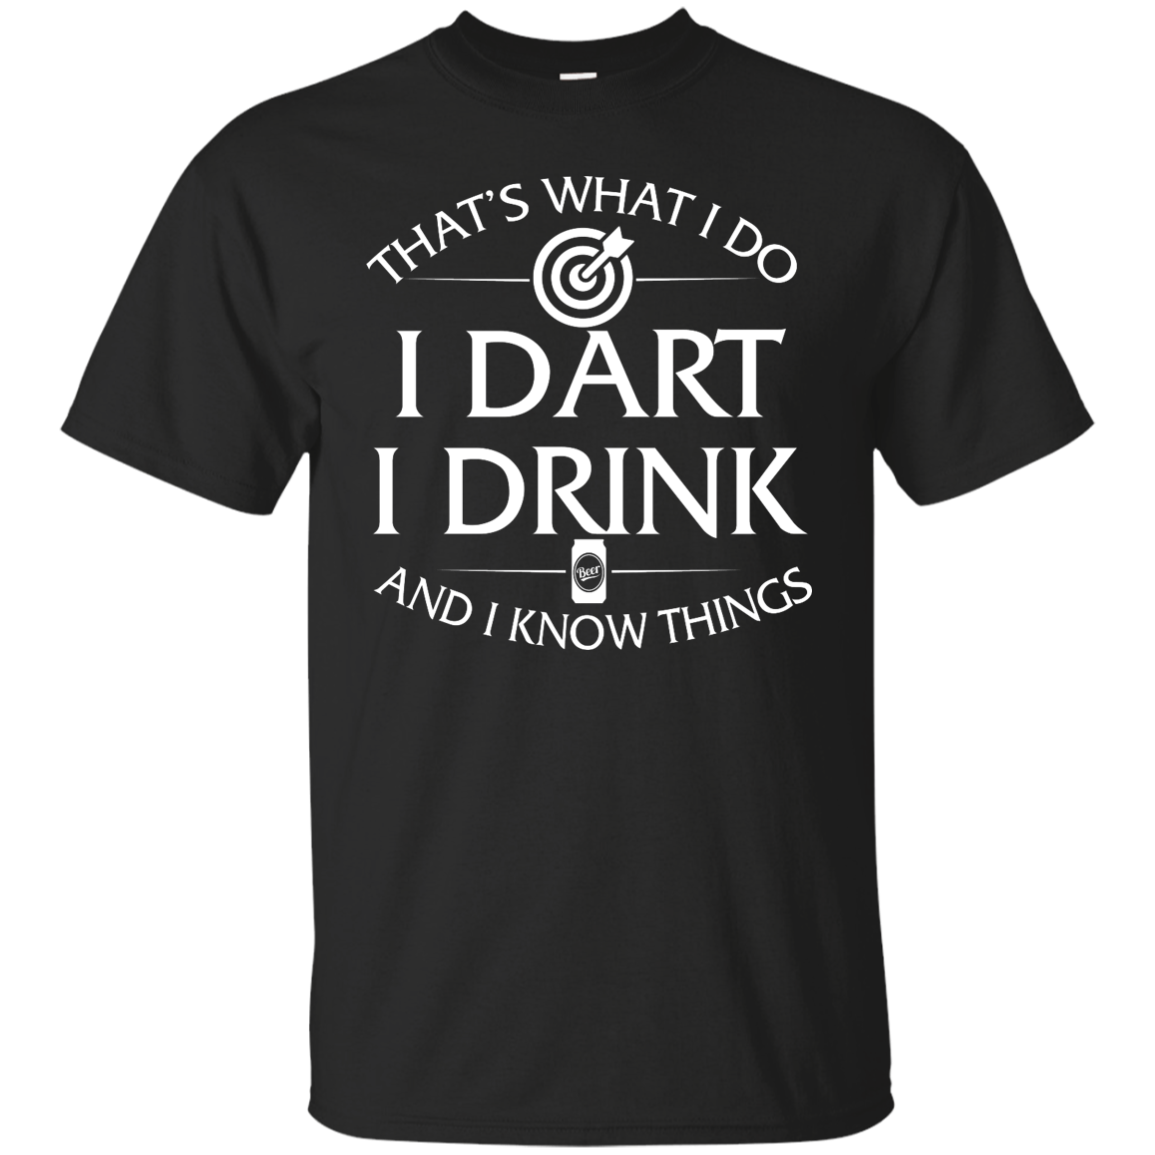 I Dart, I Drink and I Know things t-shirt: Darts shirts - ifrogtees